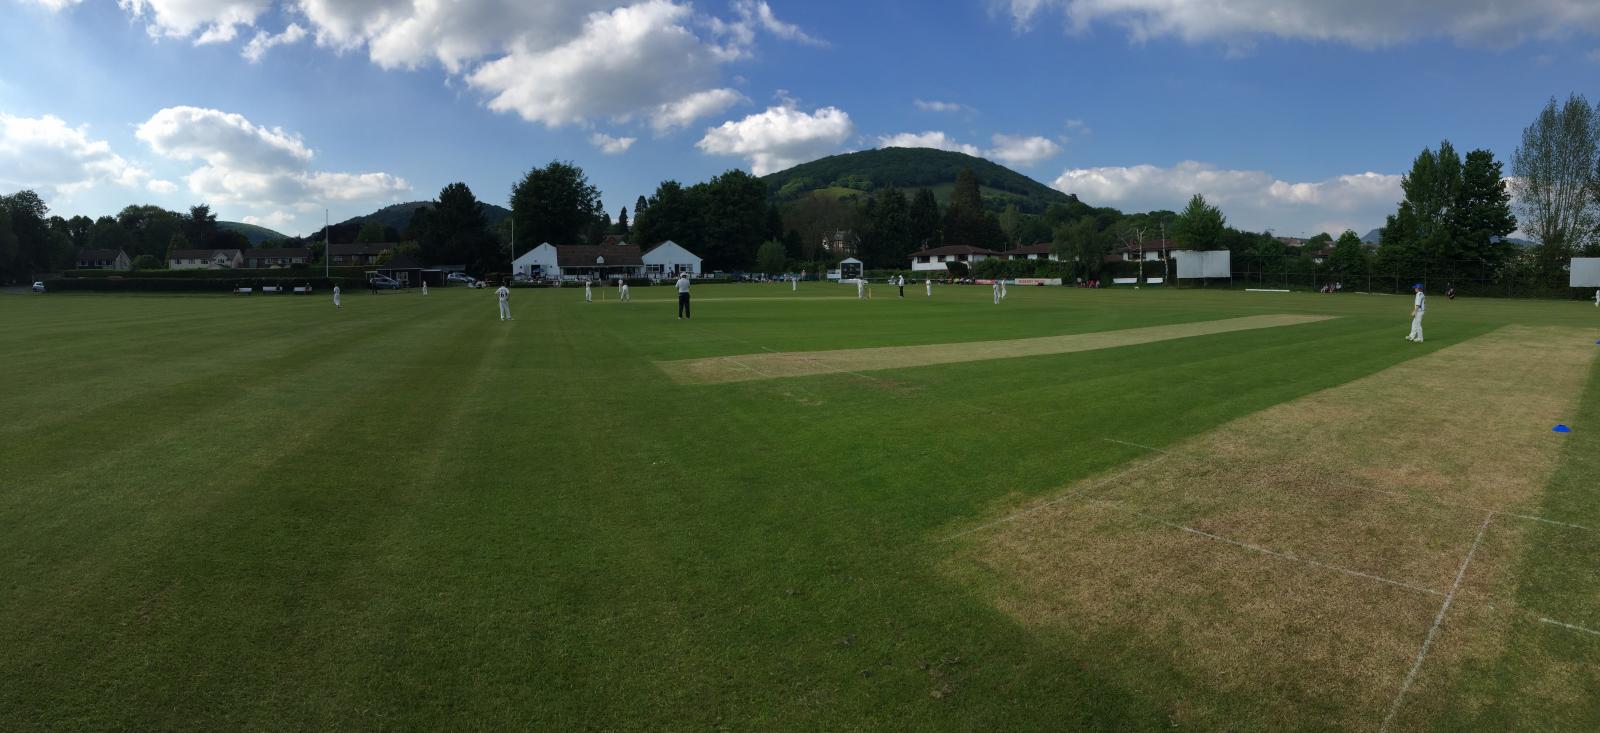 Devon U12's take the field against Gwent at Abergavenny CC